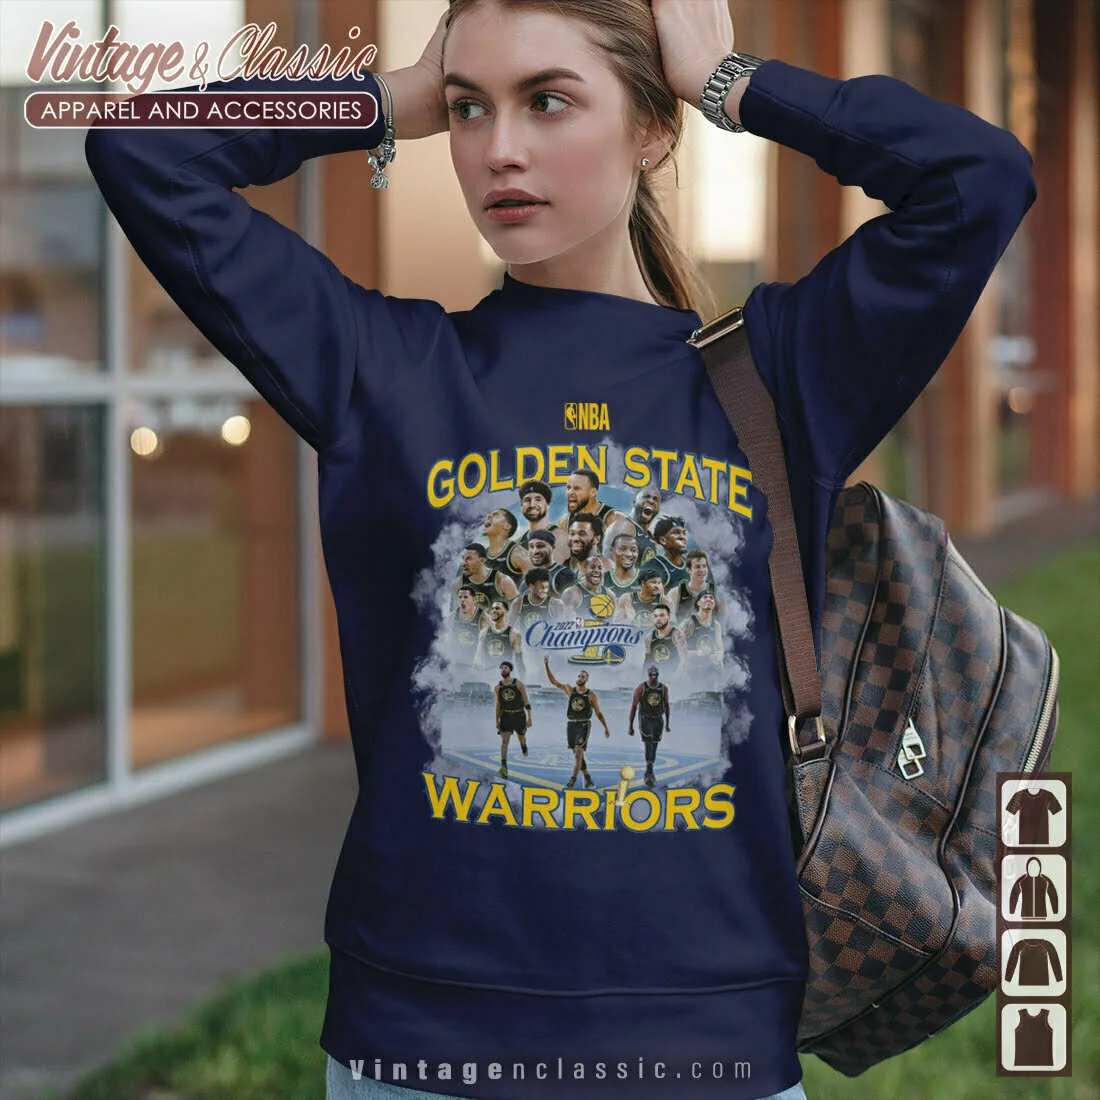 warriors sweatshirt women's